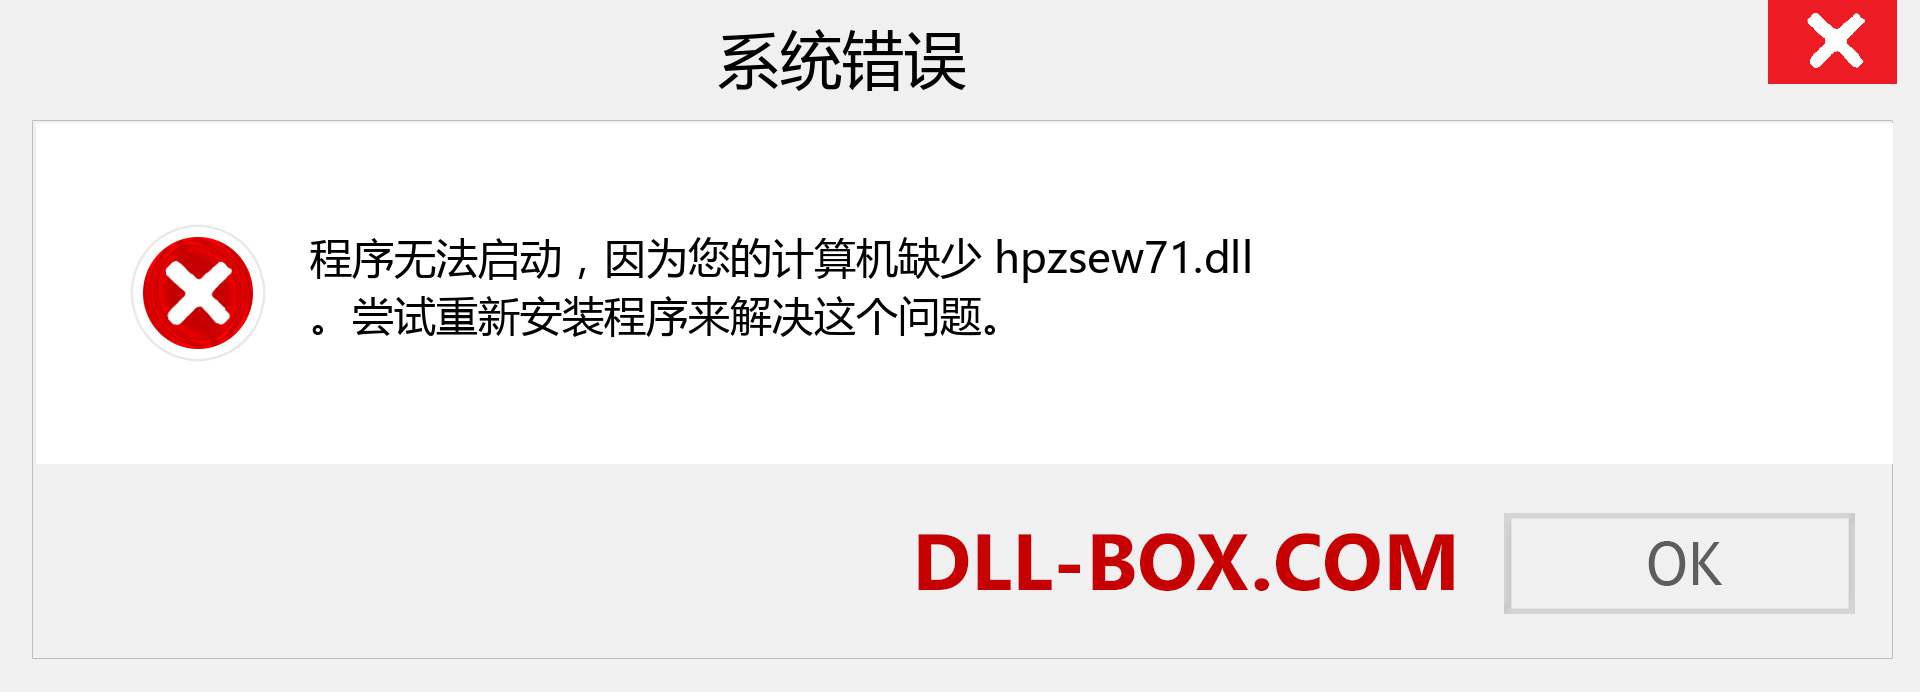 hpzsew71.dll 文件丢失？。 适用于 Windows 7、8、10 的下载 - 修复 Windows、照片、图像上的 hpzsew71 dll 丢失错误